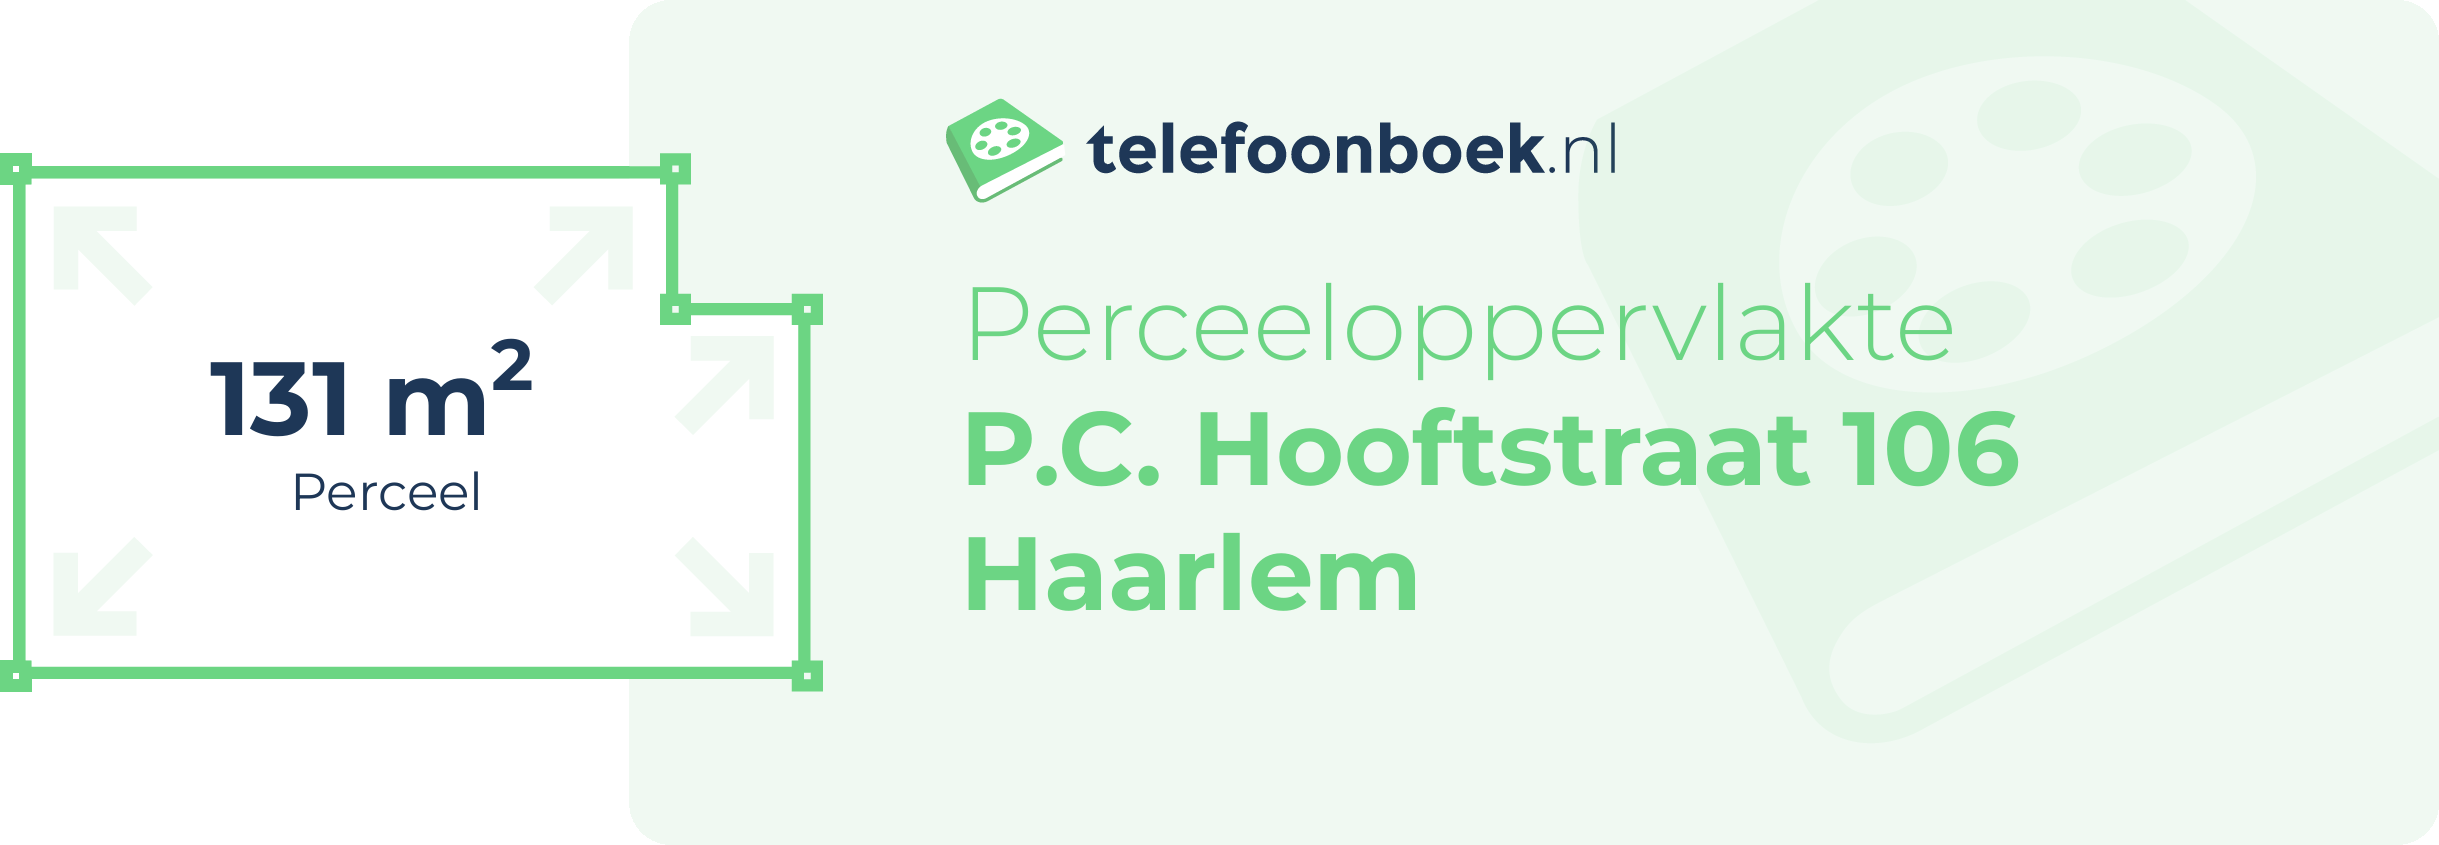 Perceeloppervlakte P.C. Hooftstraat 106 Haarlem